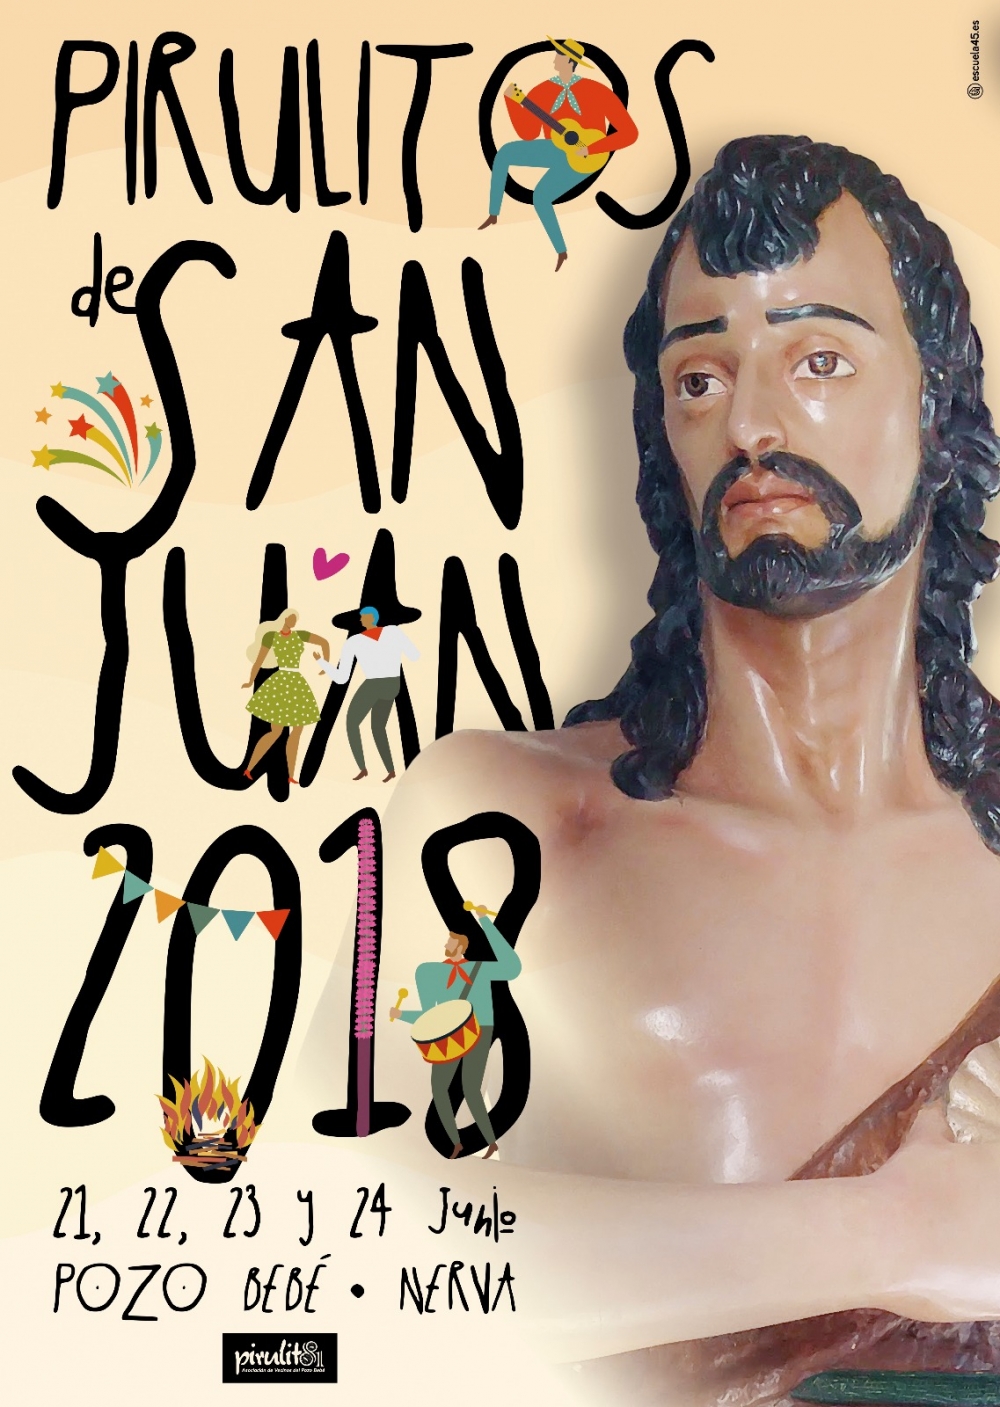 Fiestas de San Juan en Nerva